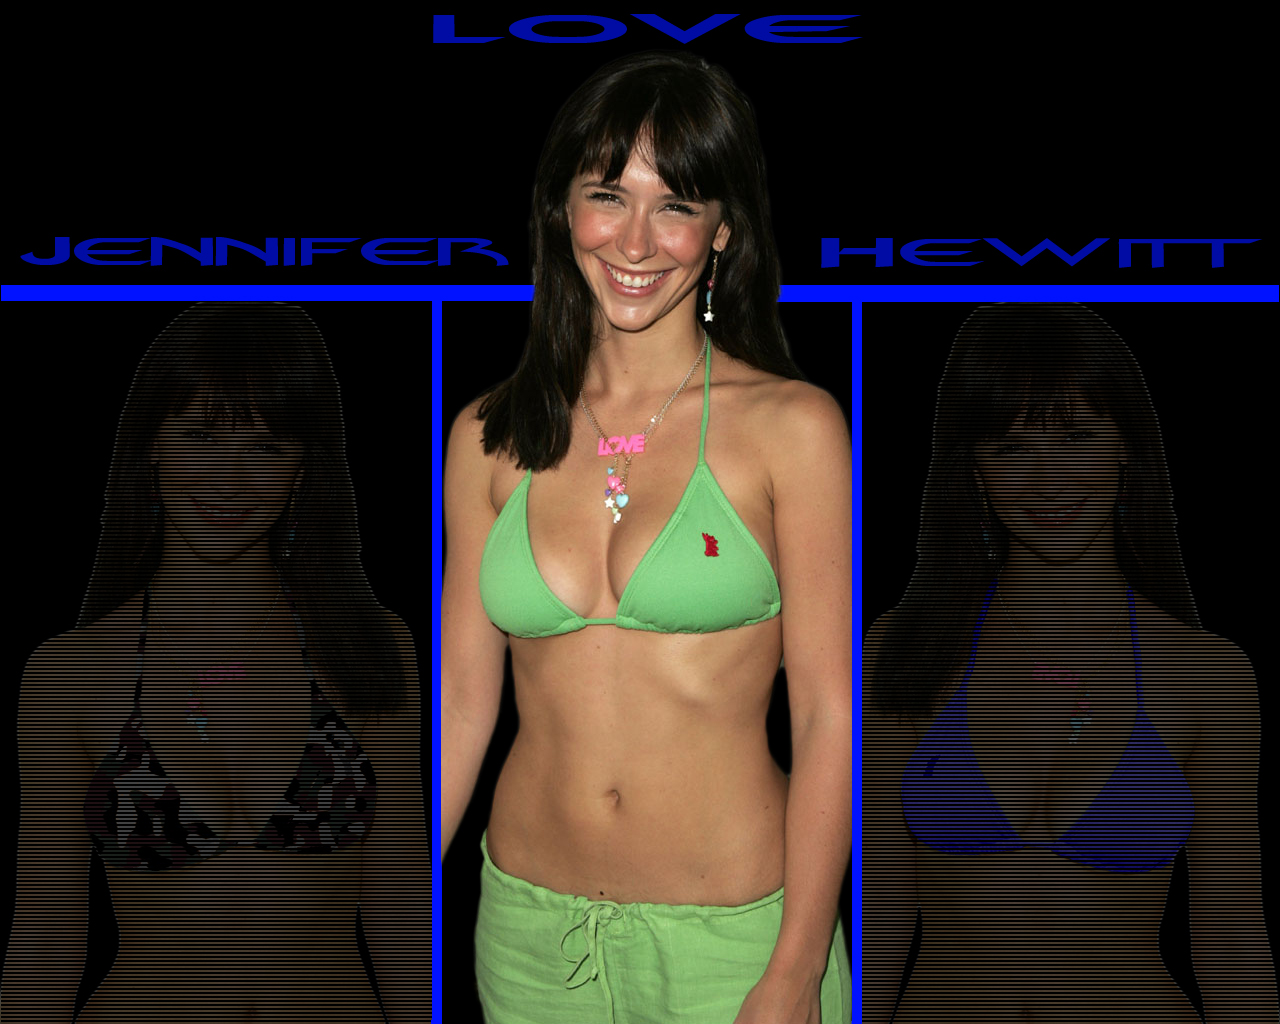 Jennifer Love Hewitt Bikini by fantacmet on DeviantArt.